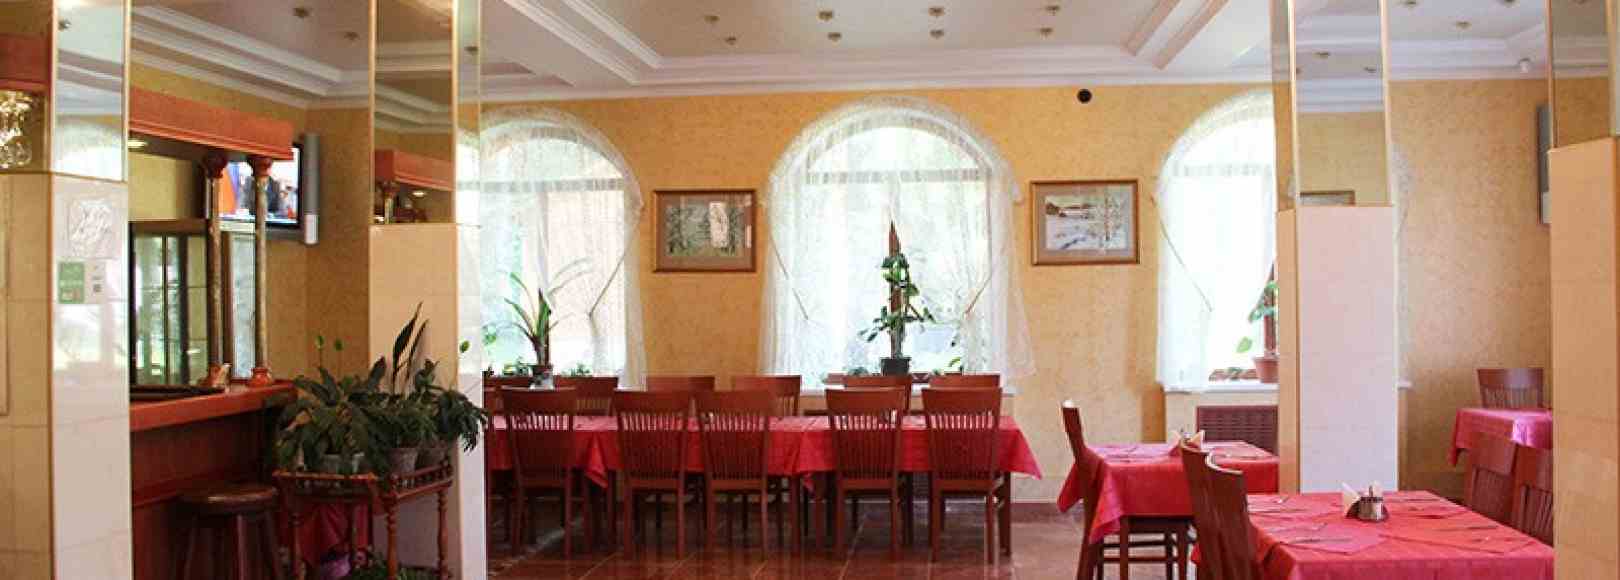 Фотография банкетного зала Пушкиногорье